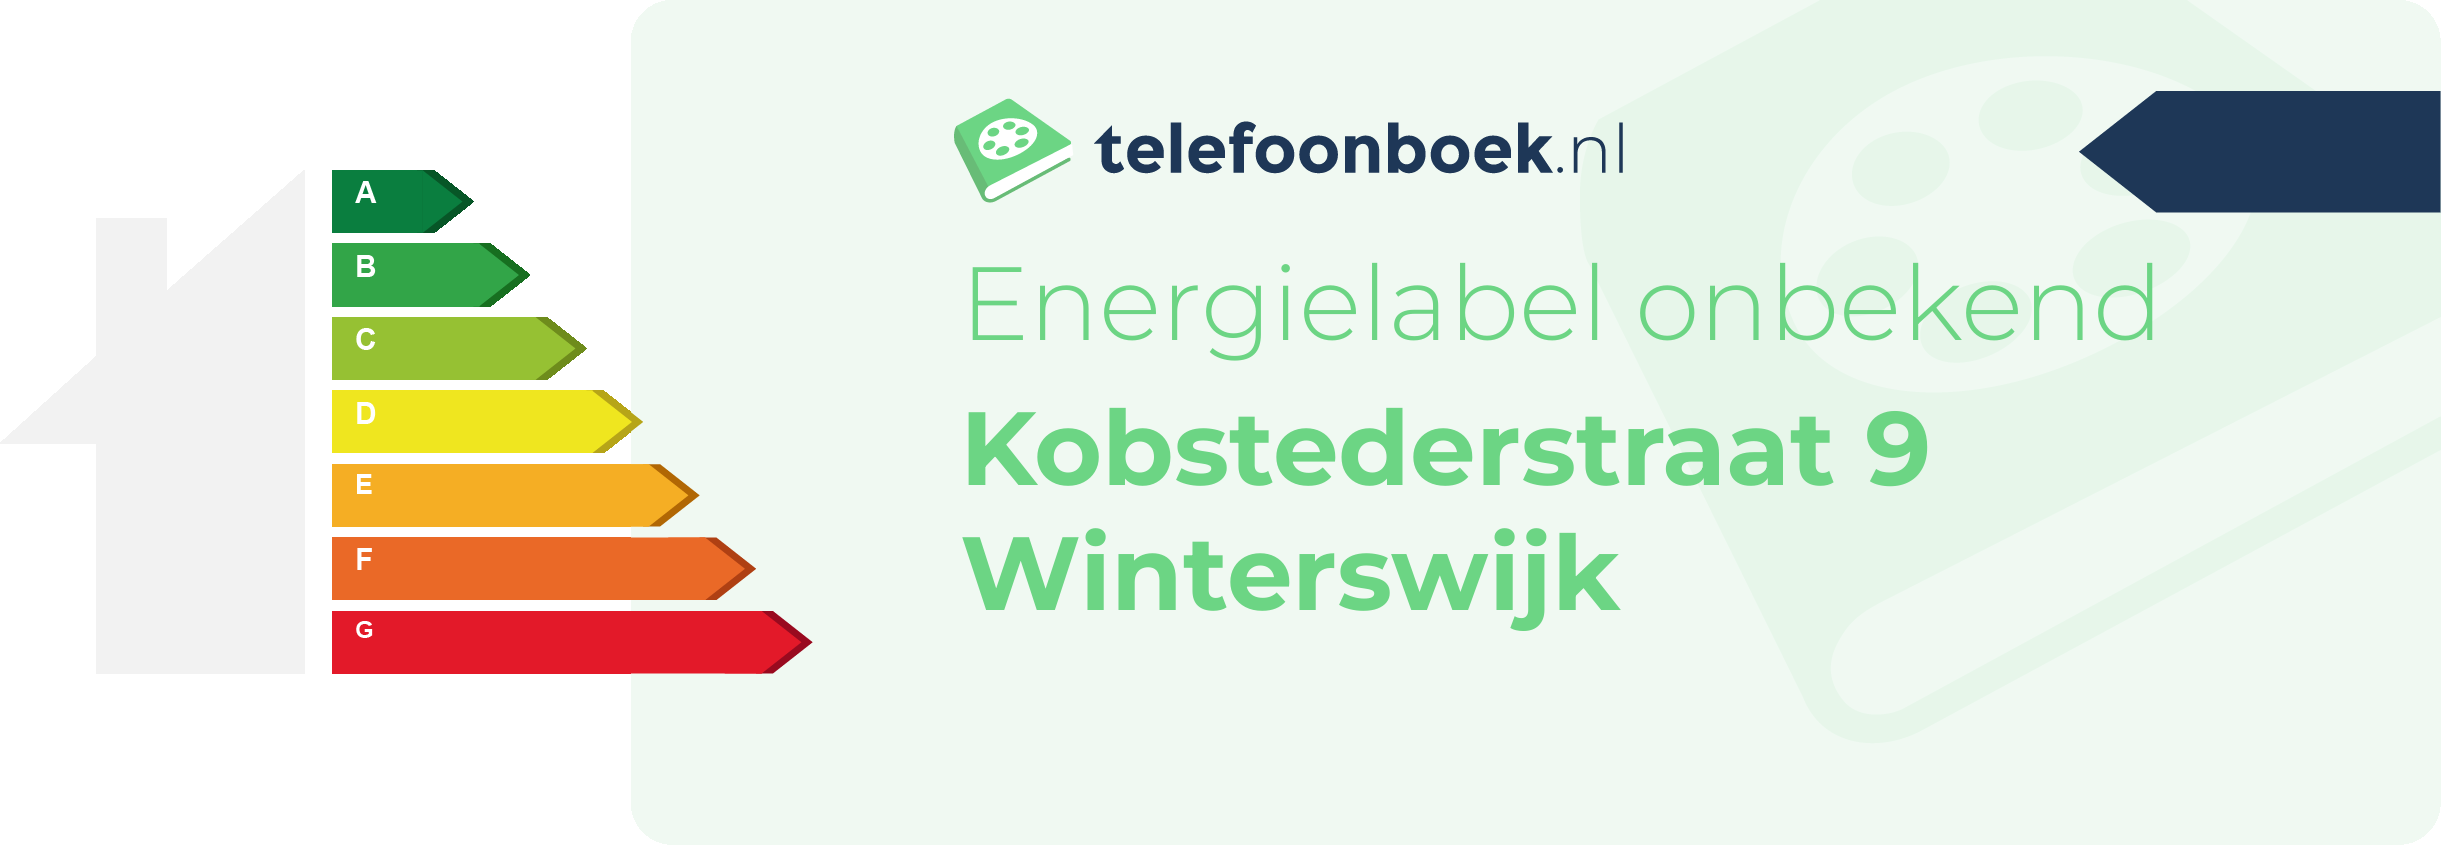 Energielabel Kobstederstraat 9 Winterswijk